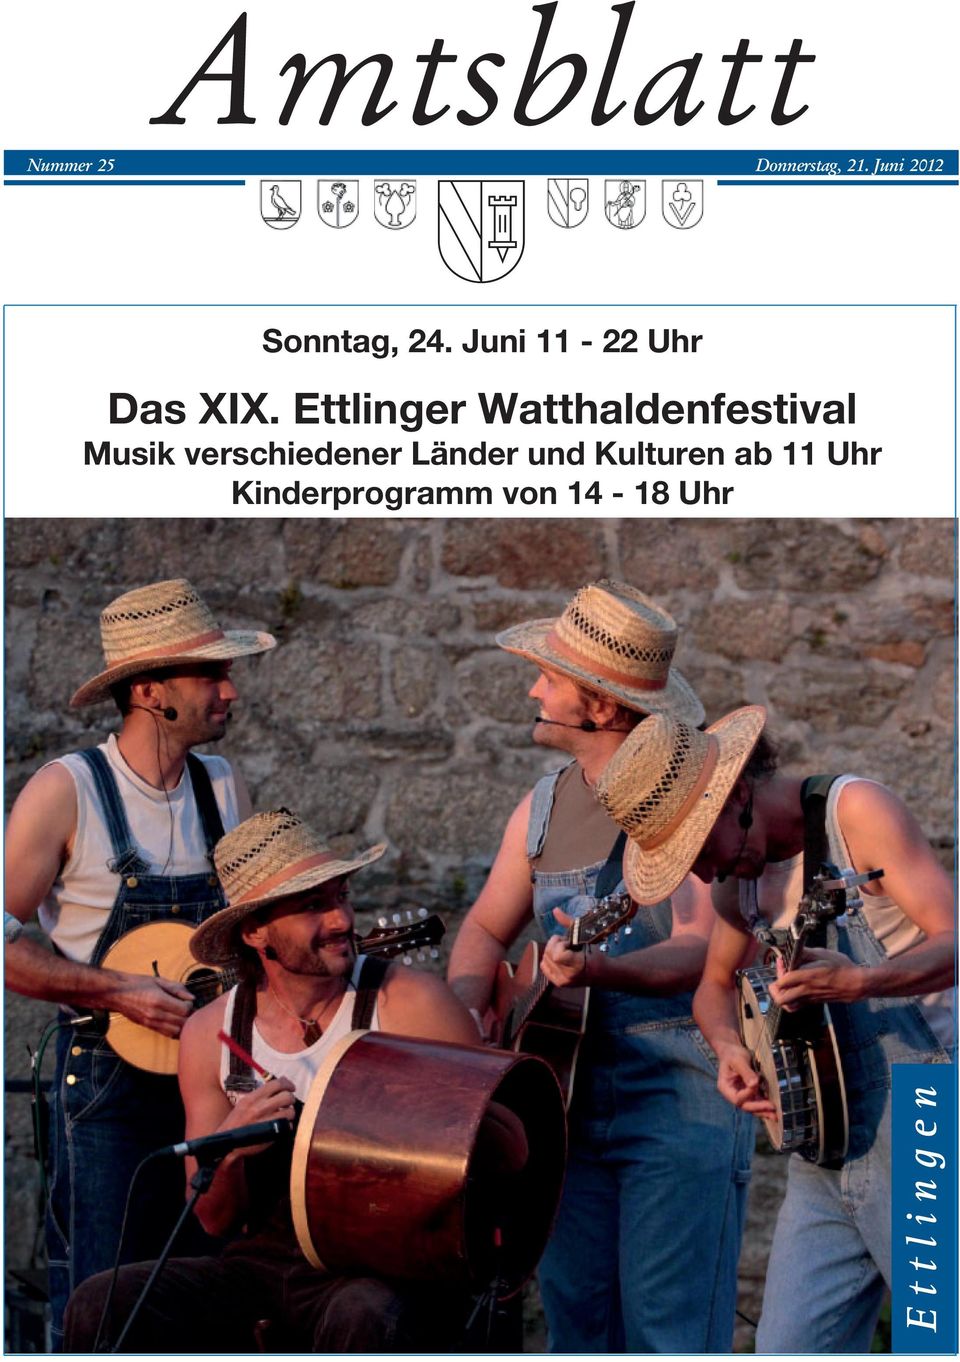 Ettlinger Watthaldenfestival Musik